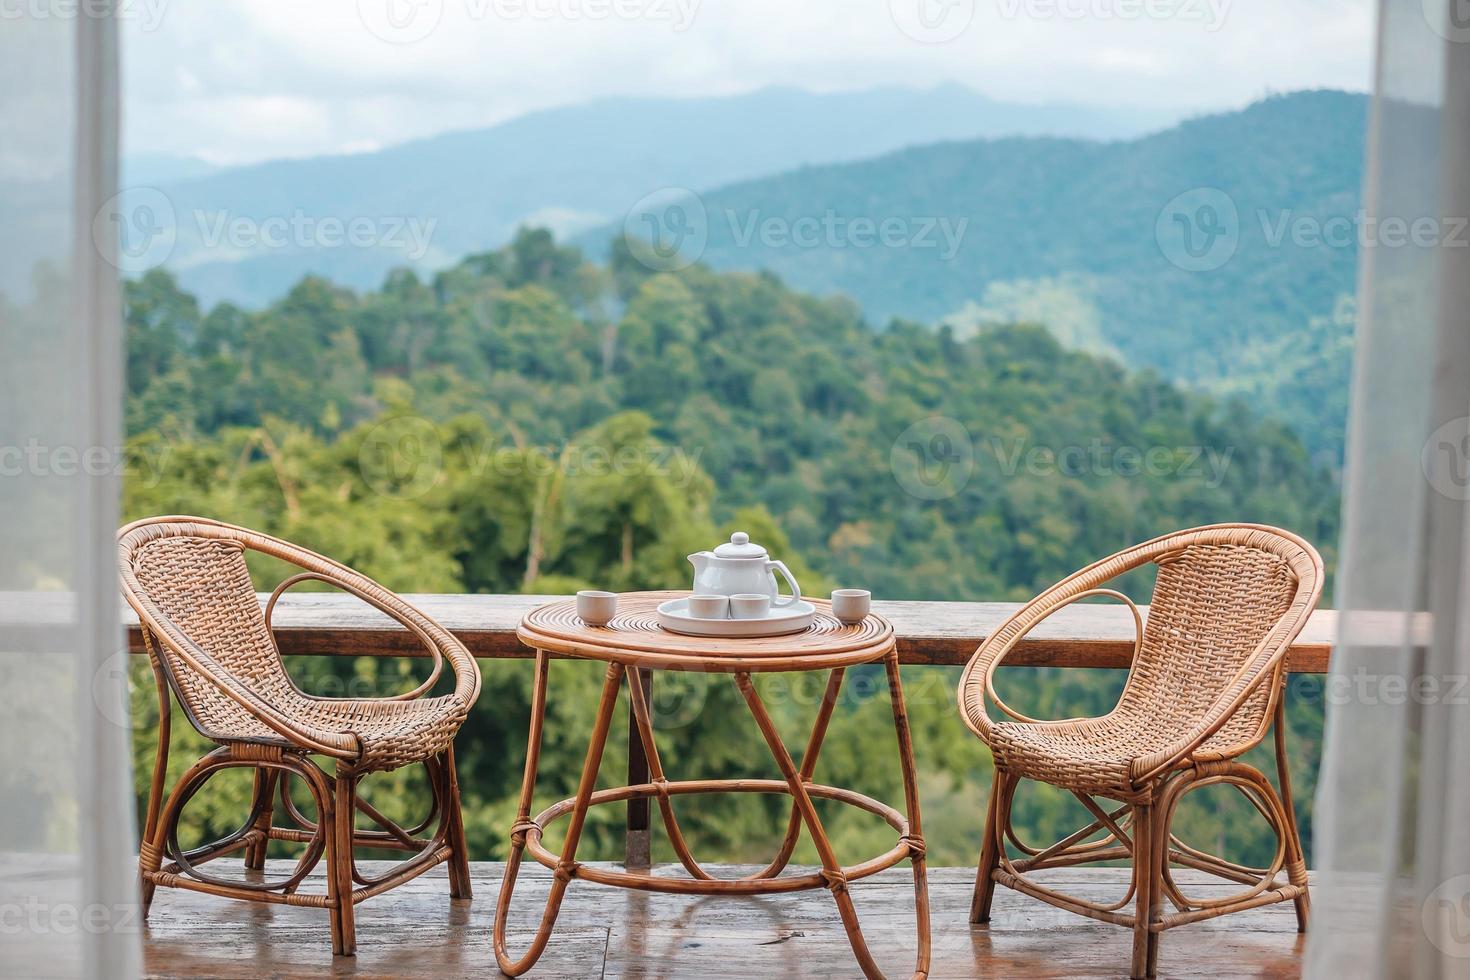 tekanna dukat på bordet på morgonen med utsikt över bergen på landsbygdens hem eller hemvistelse. semester, resor och resa koncept foto